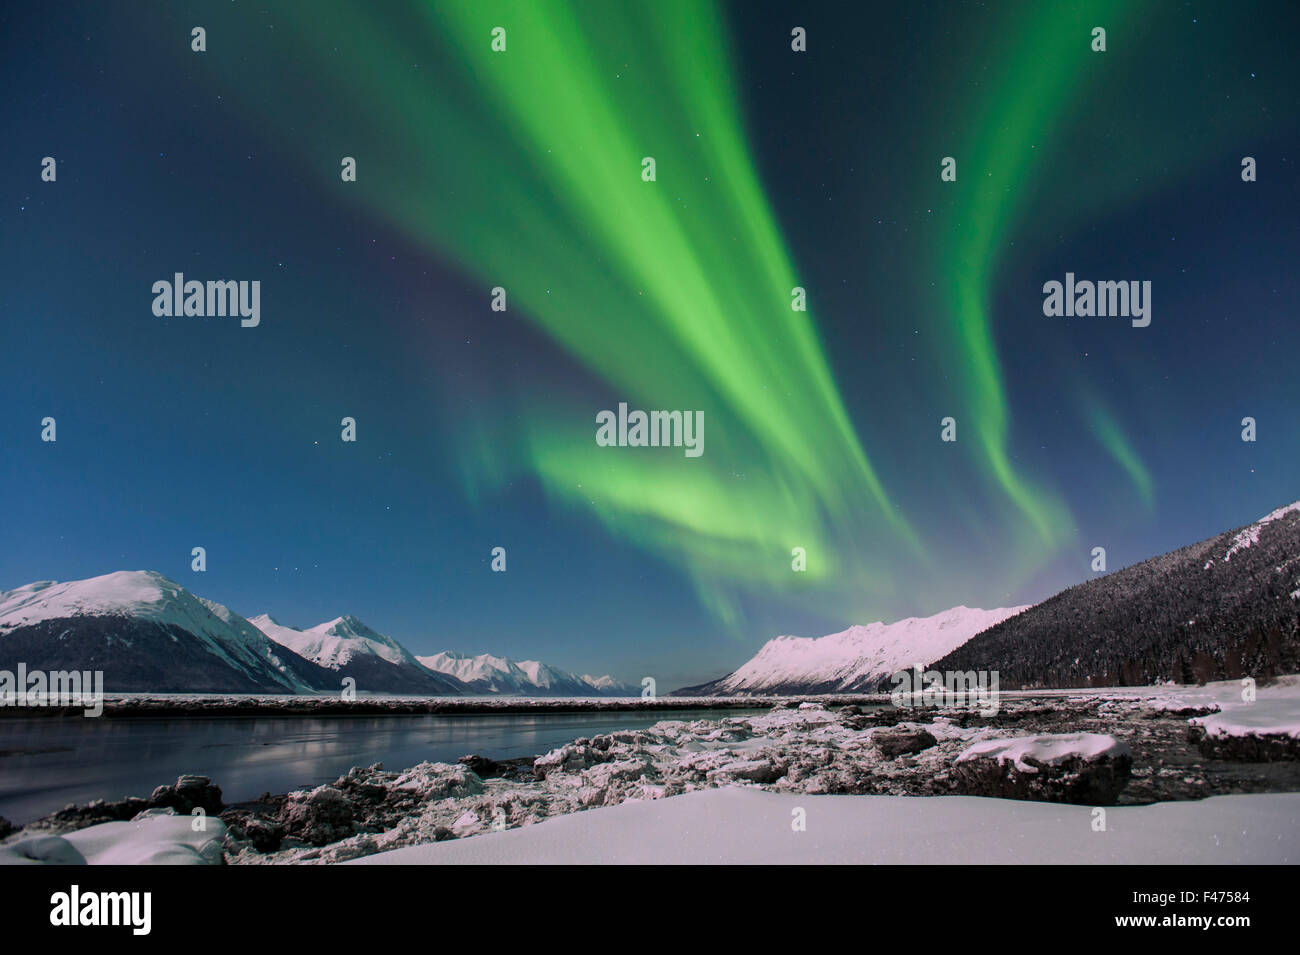 Aurora borealis and moonlight at Turnagain Arm, Alaska, USA Stock Photo